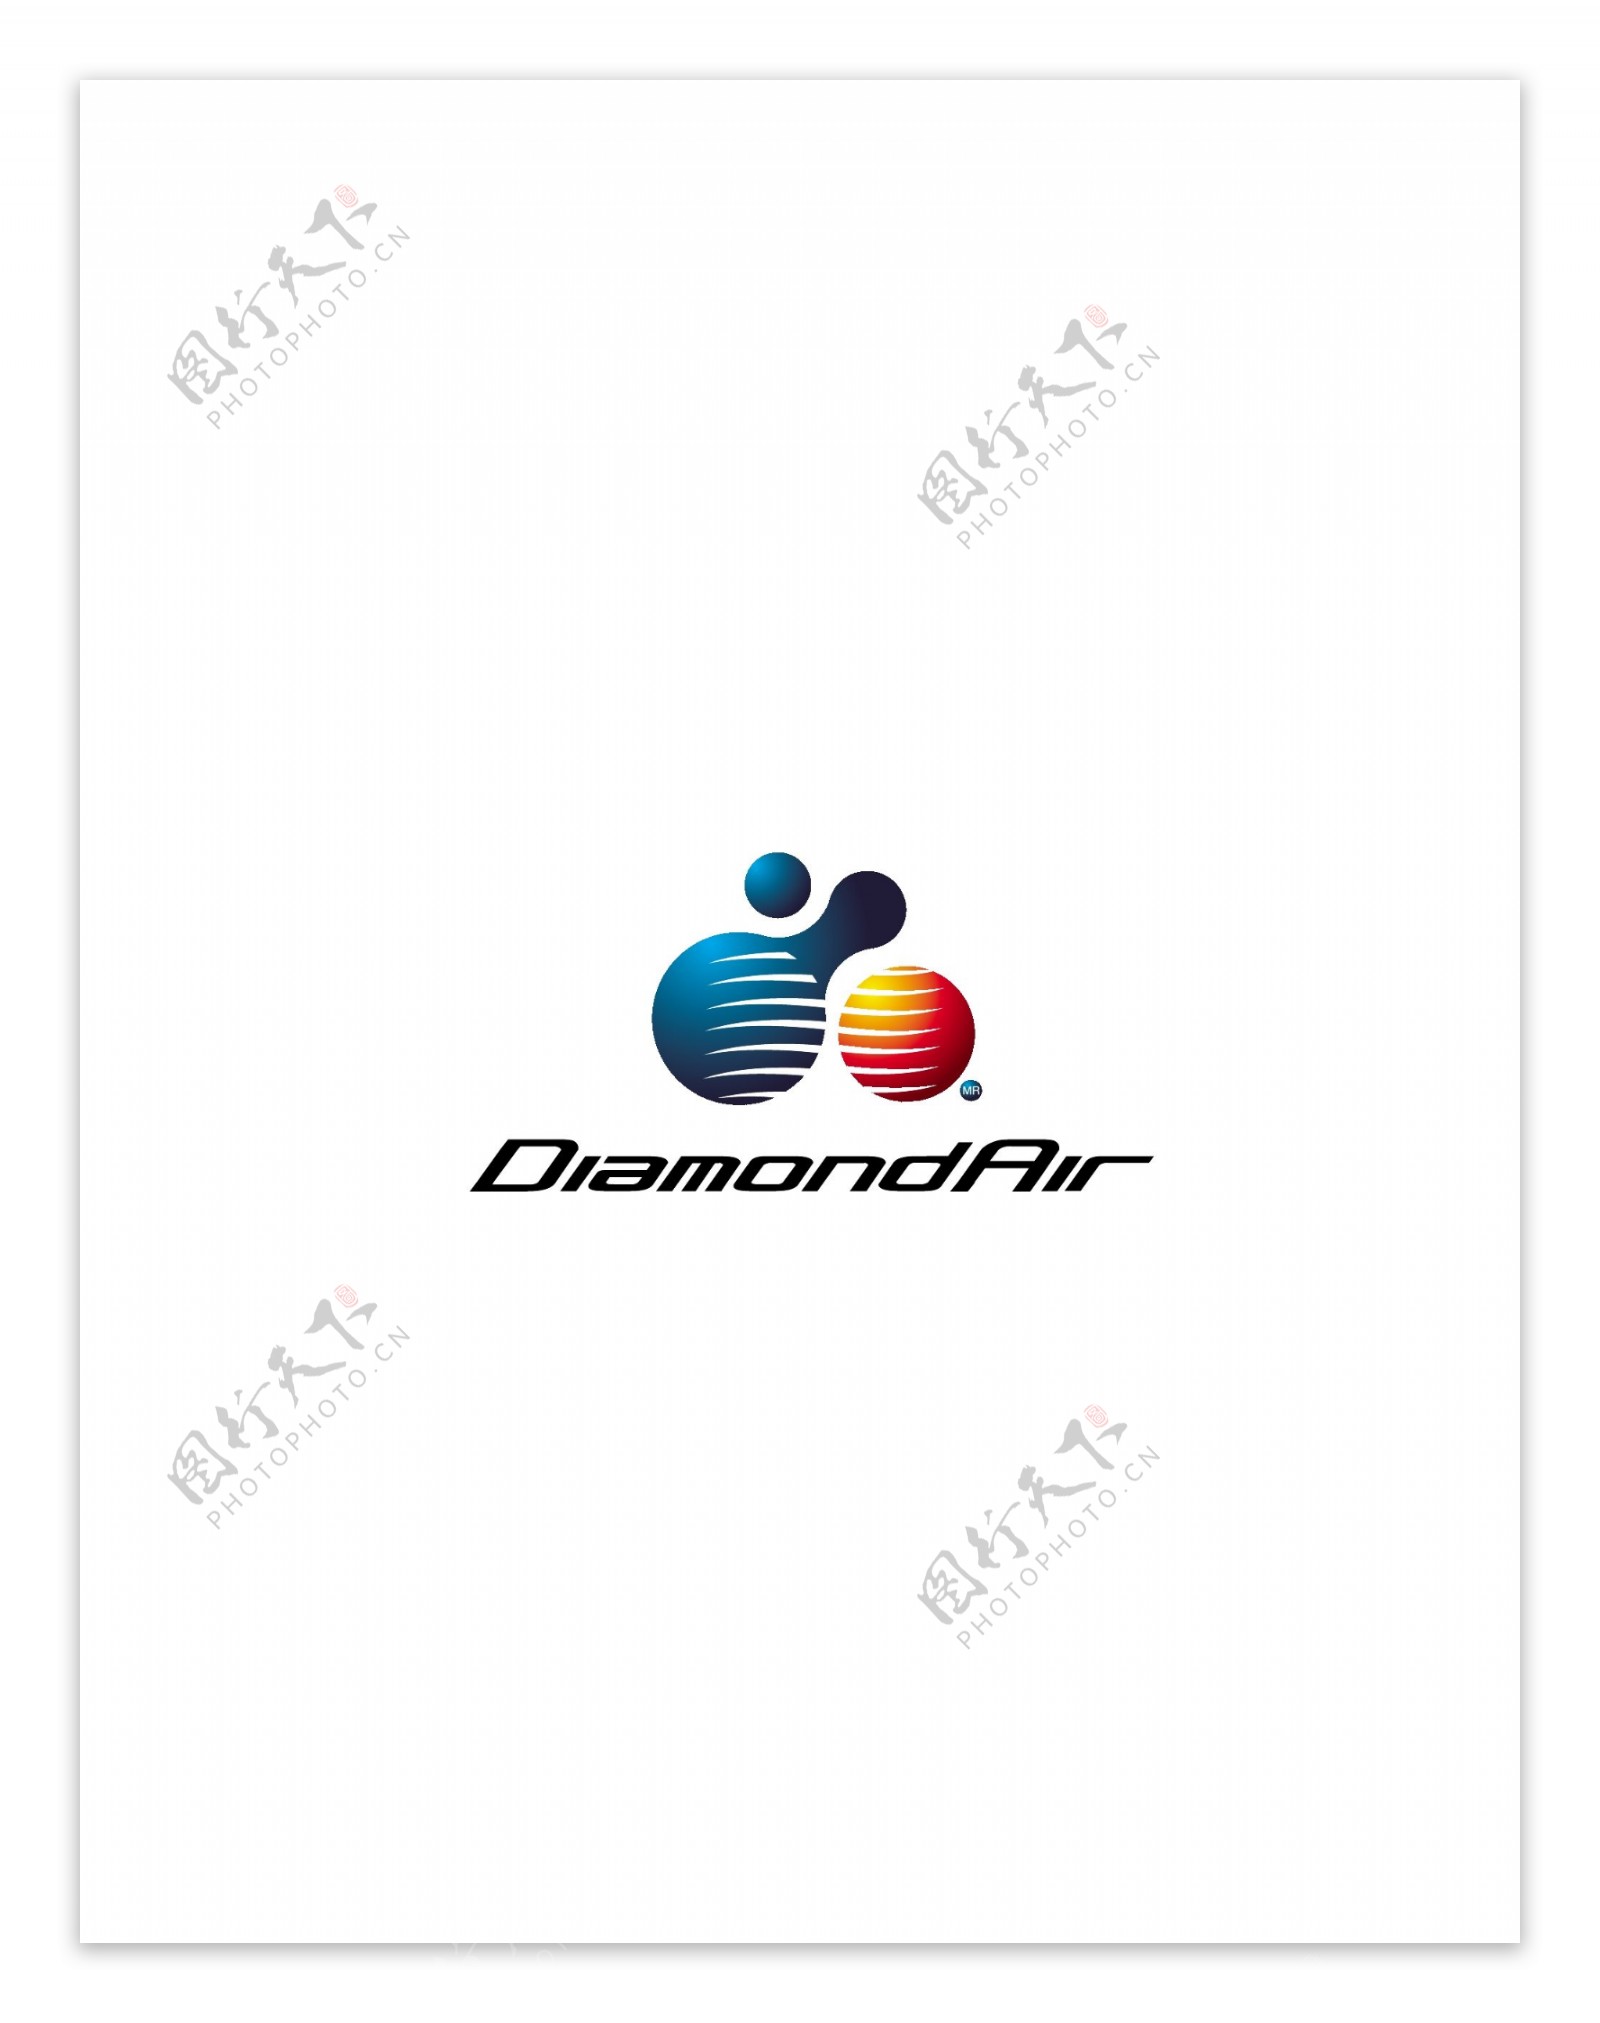 DiamondAirlogo设计欣赏DiamondAir航空业标志下载标志设计欣赏